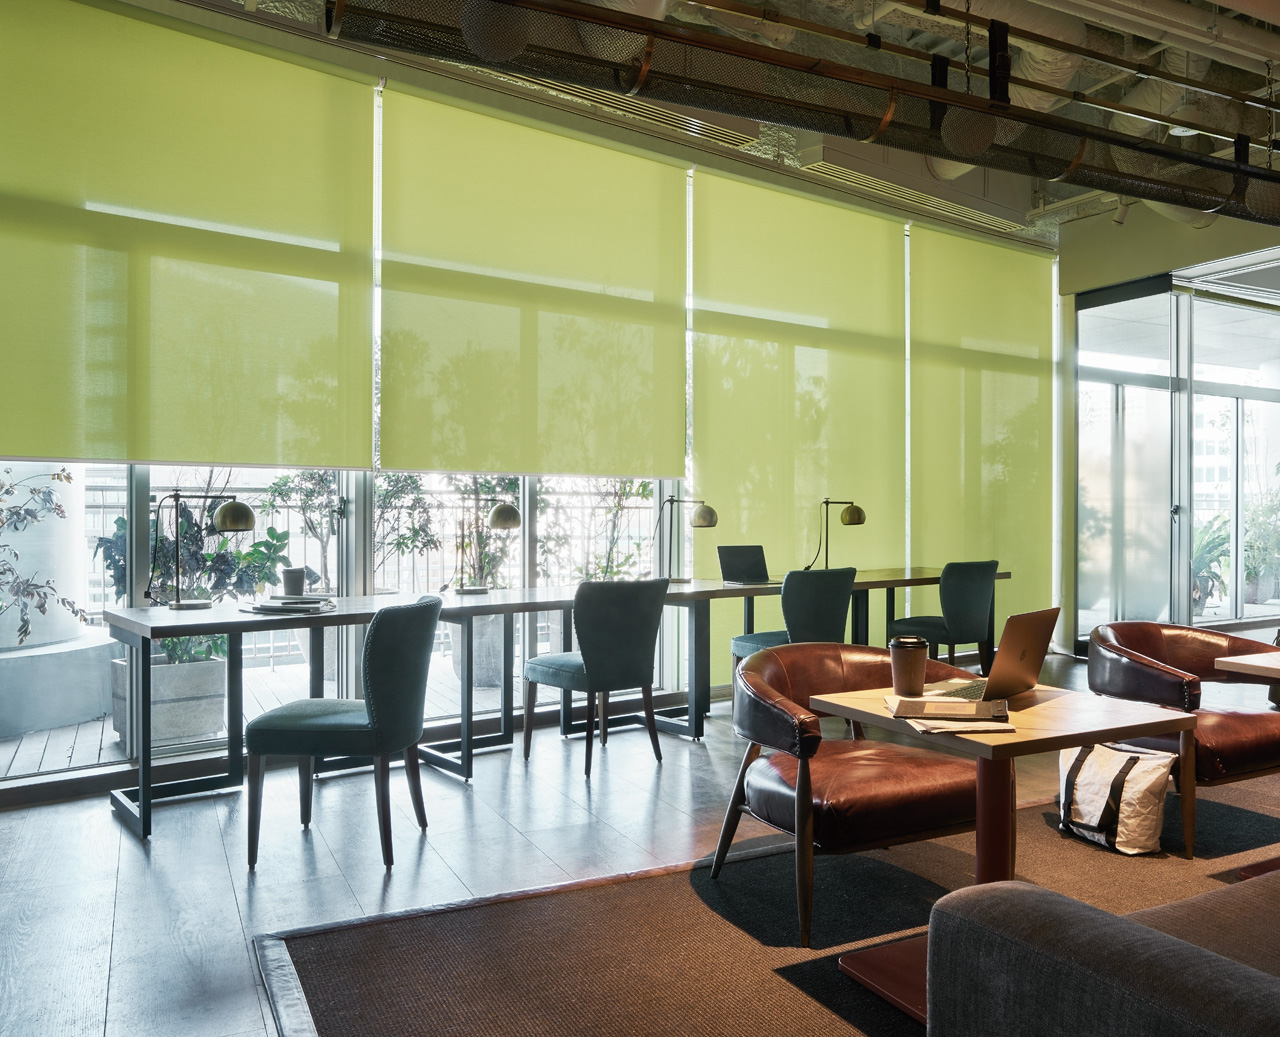 グリーンのロールスクリーンが特徴的なカフェスペース